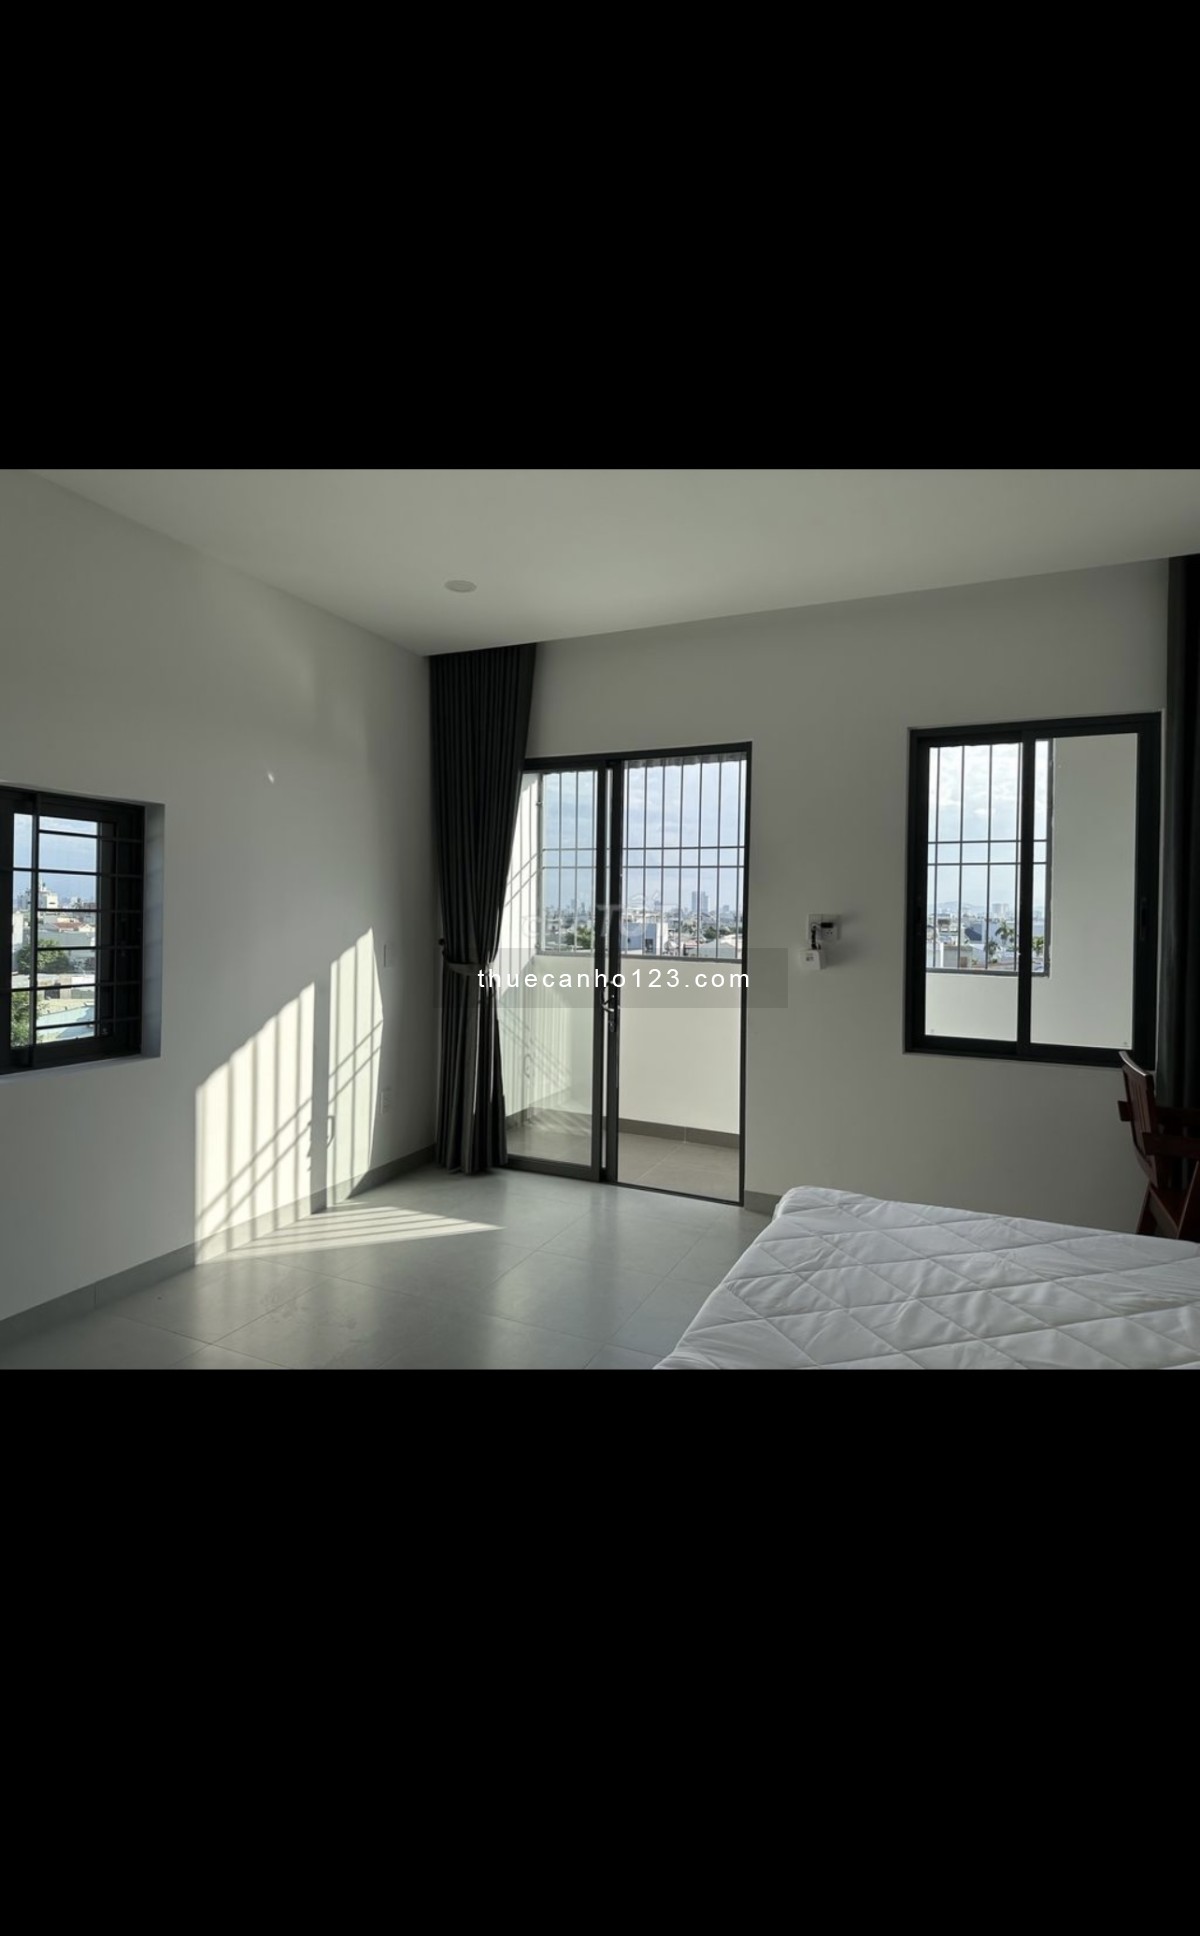 Full nội thất căn hộ 50m2, mới toanh chưa qua sử dụng, giá rẻ view thoáng mát gần núi biển